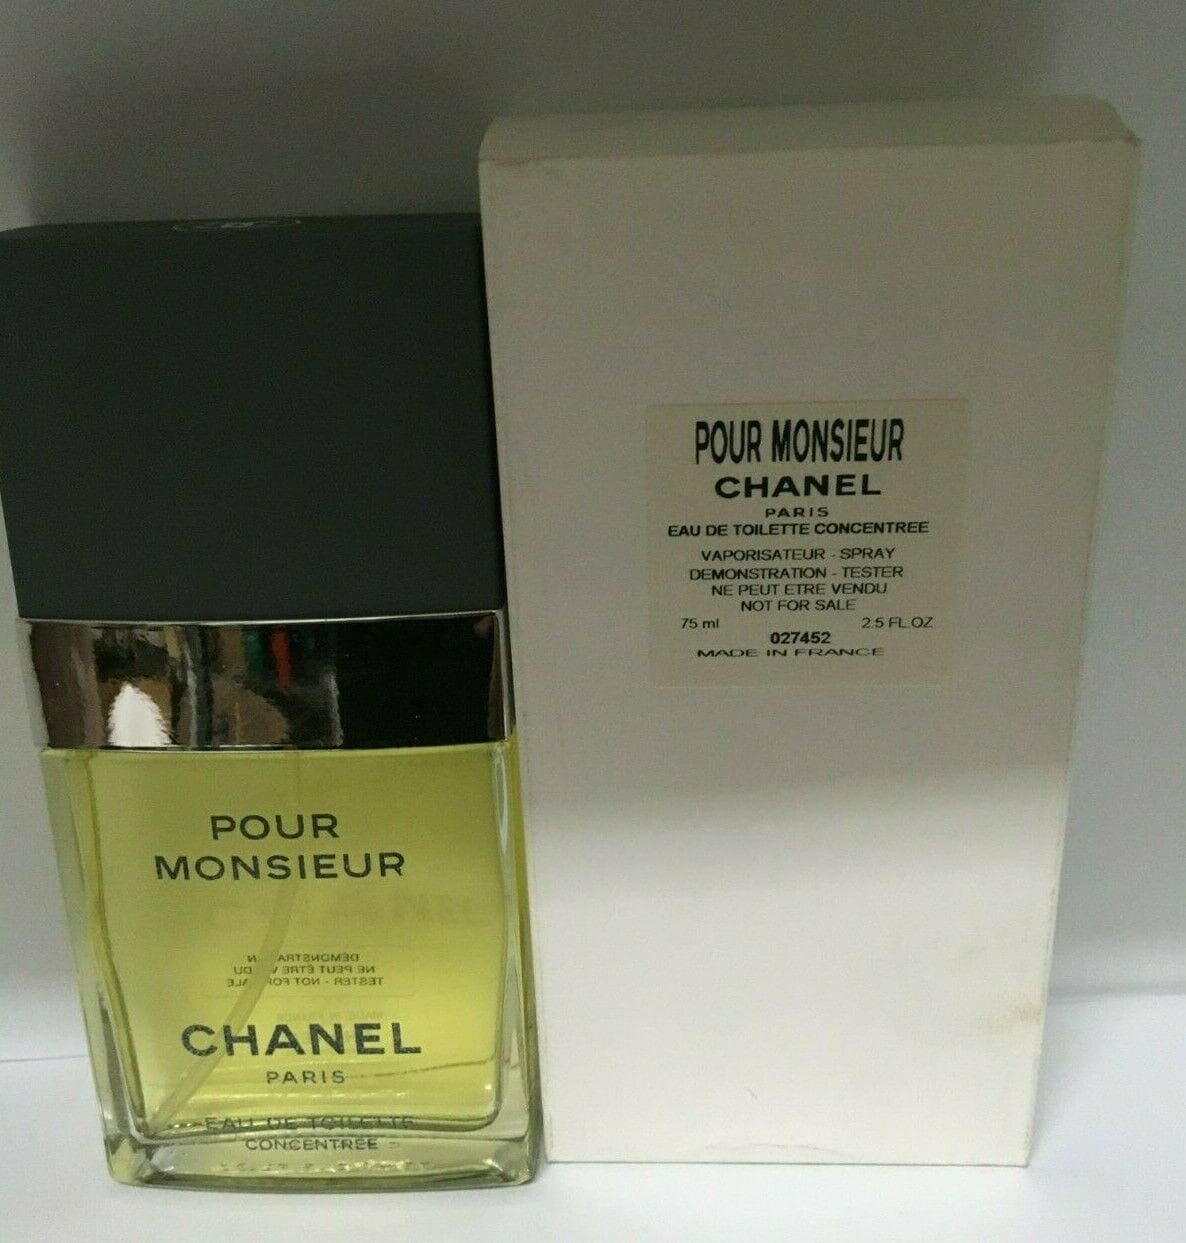 Chanel Pour Monsieur Eau De Toilette Concentree 4ml Miniature 